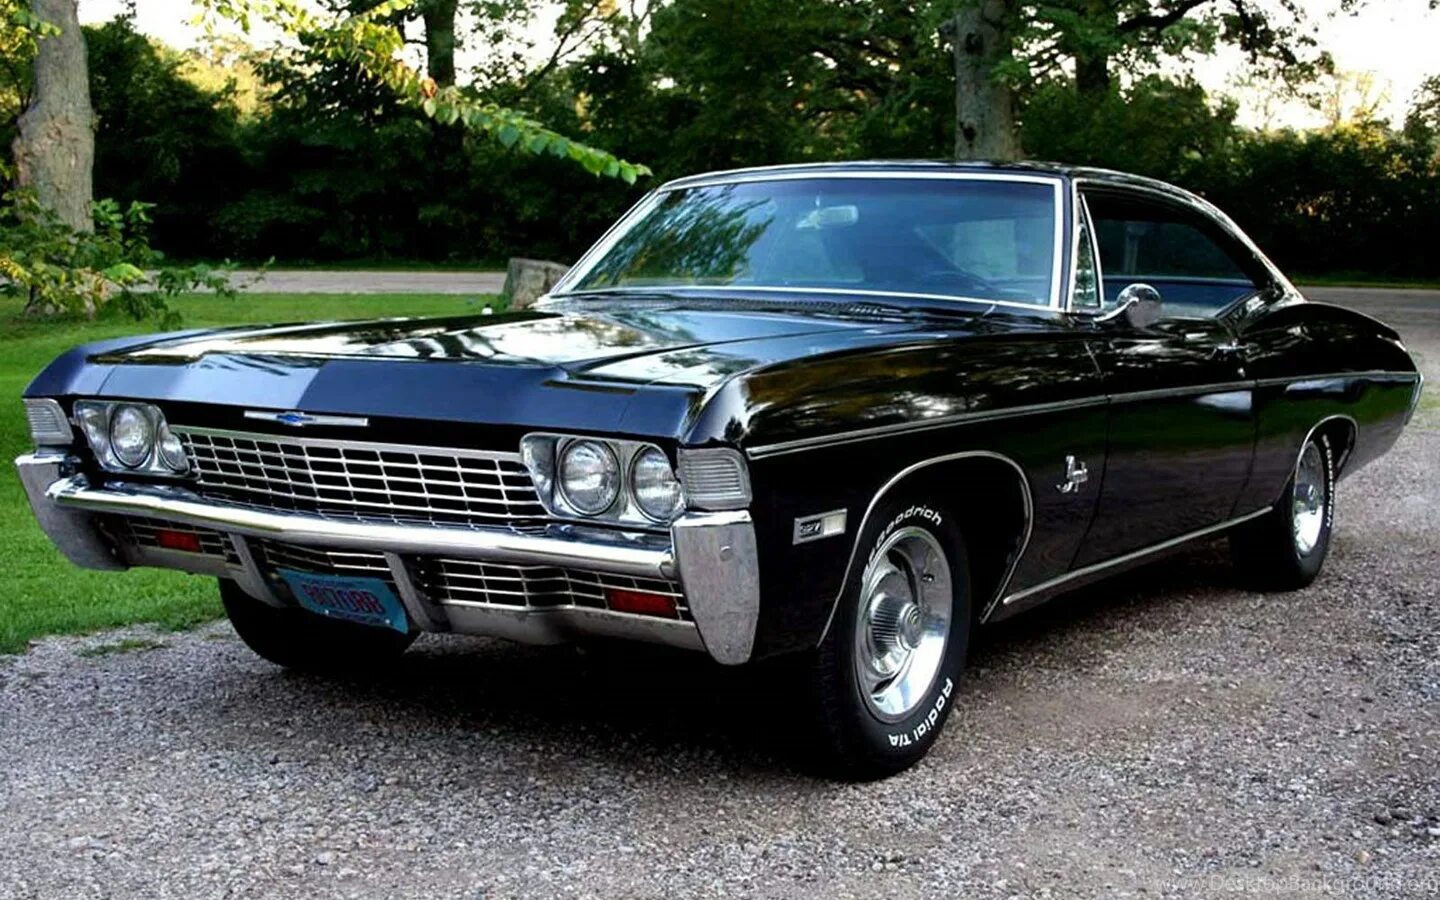 Chevrolet impala год. Шевроле Импала 1967. Shavrale Tempala 1967. Шевроле Импала 1967 черная. Автомобиль Шевроле Импала 1967.